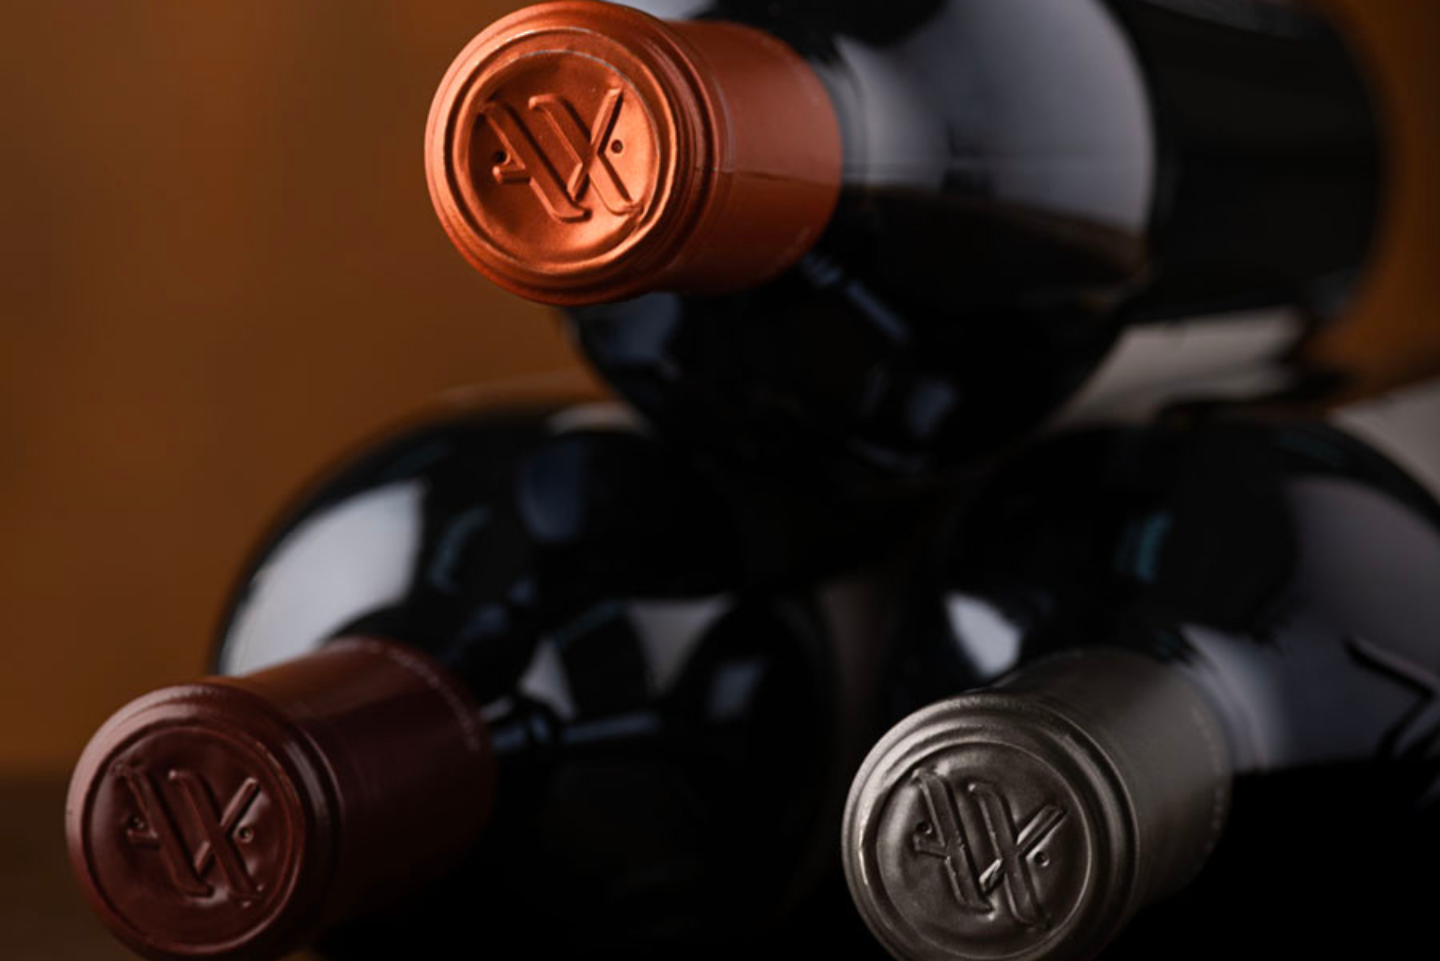 5 tips to preserve your Propietat d’Espiells and Pagos de Anguix wine bottles